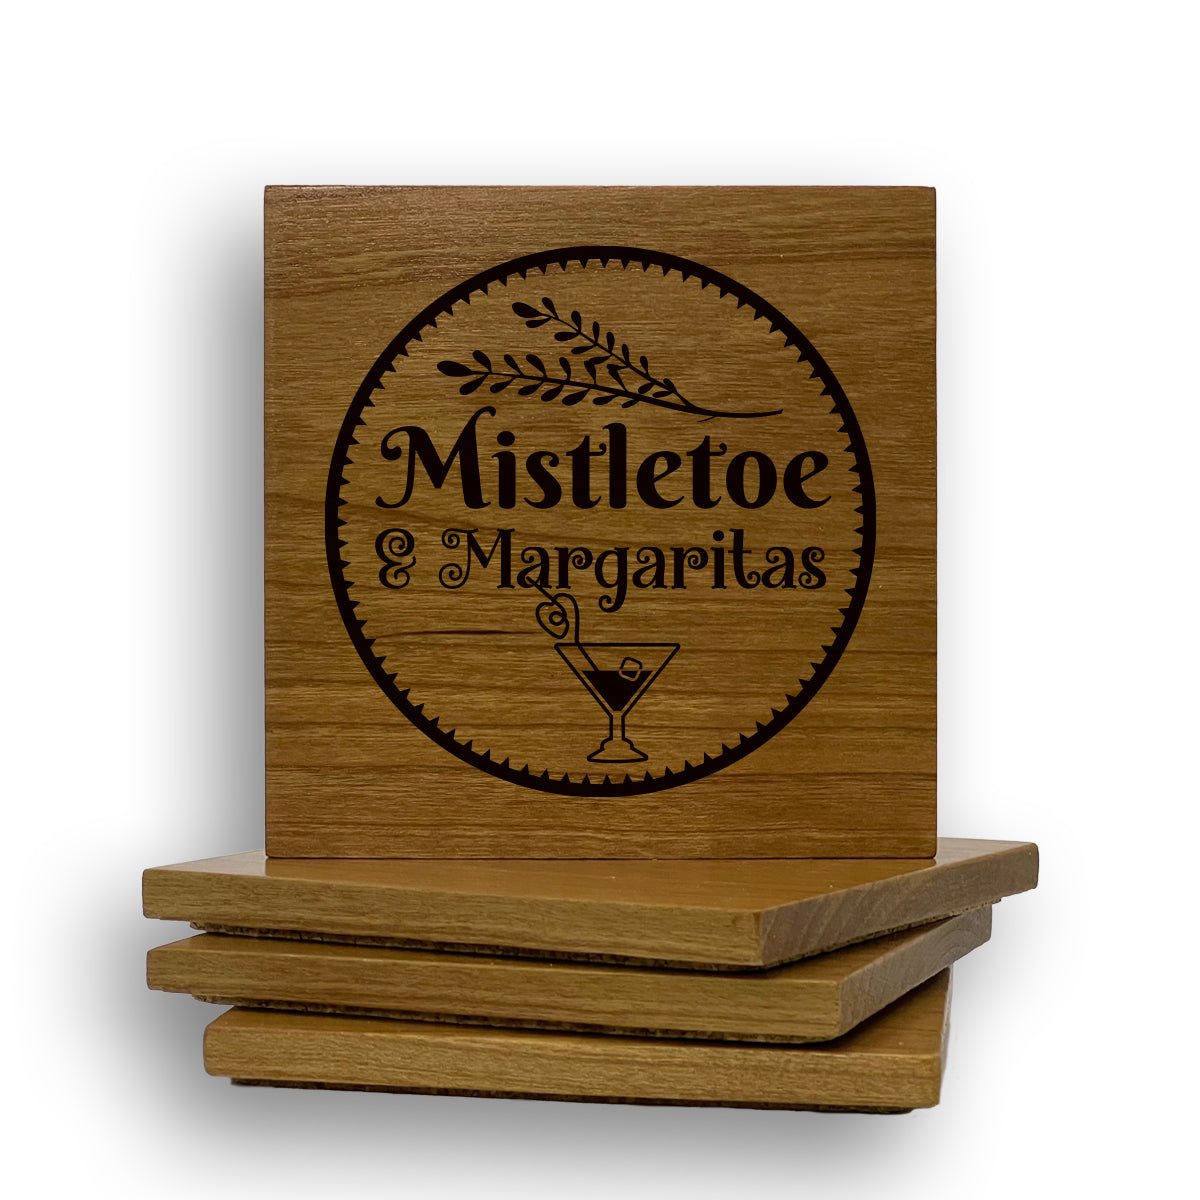 Mistletoe And Margaritas Coaster